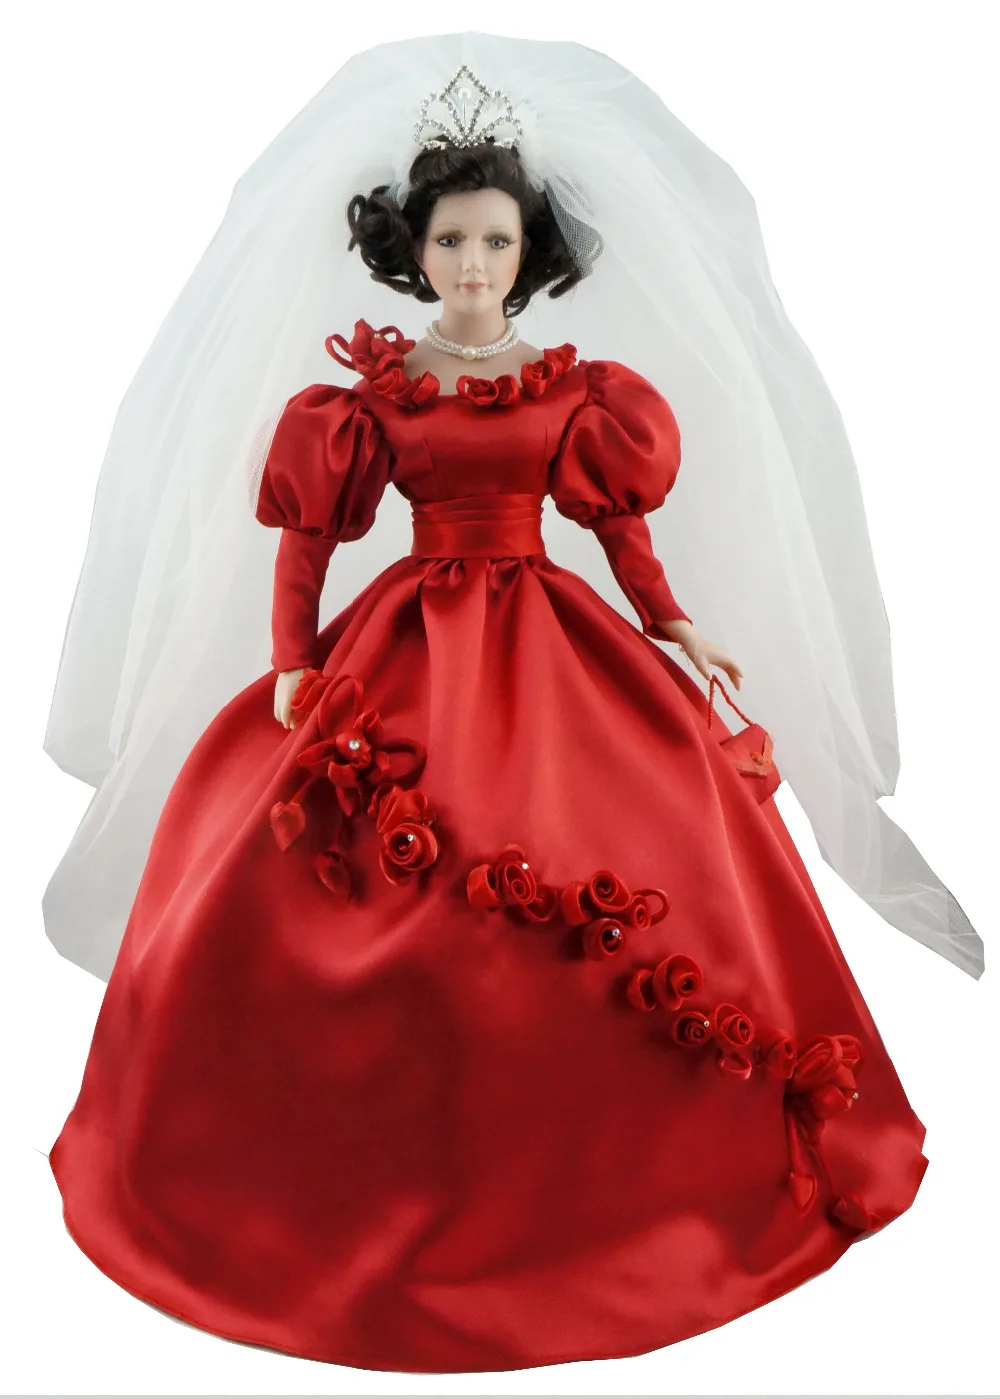 Кукла фарфоровая музыкальная шкатулка Домашняя Коллекция свадебное платье фарфоровая свадебная для подарков или украшения 20 дюймов(около 50 см